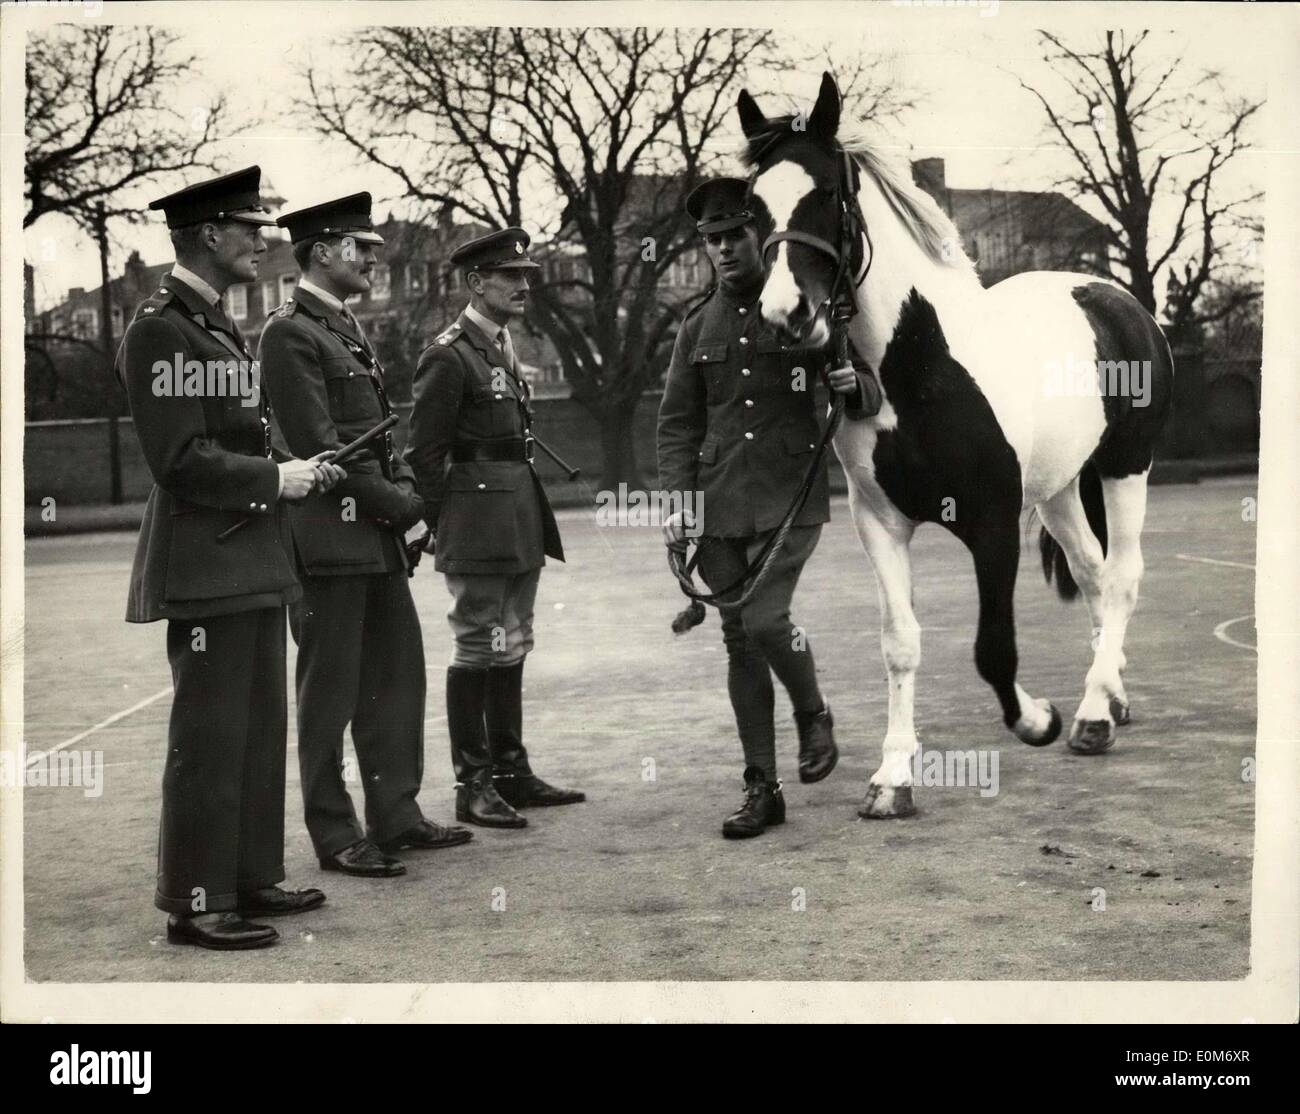 Nov. 07, 1953 - Il Blues scegliere un nuovo tamburo a cavallo. Burlone arriva a Windsor. Joker, a quattro anni di skewbald castrazione, è stato scelto come il cavallo del tamburo del Royal Horse Guards (blues), andrà a sostituire i reggimenti famoso cavallo di tamburo, Pompeo, che morì nel mese di luglio. Joker il nuovo tamburo cavallo è stato ora rinominato Annibale dal Royal Horse Guards. Keystone foto mostra: l a r i principali il marchese di Douro comandante della Royal Horse Guards, Capitano H.S. Hopkins, Lt. W.E Foto Stock